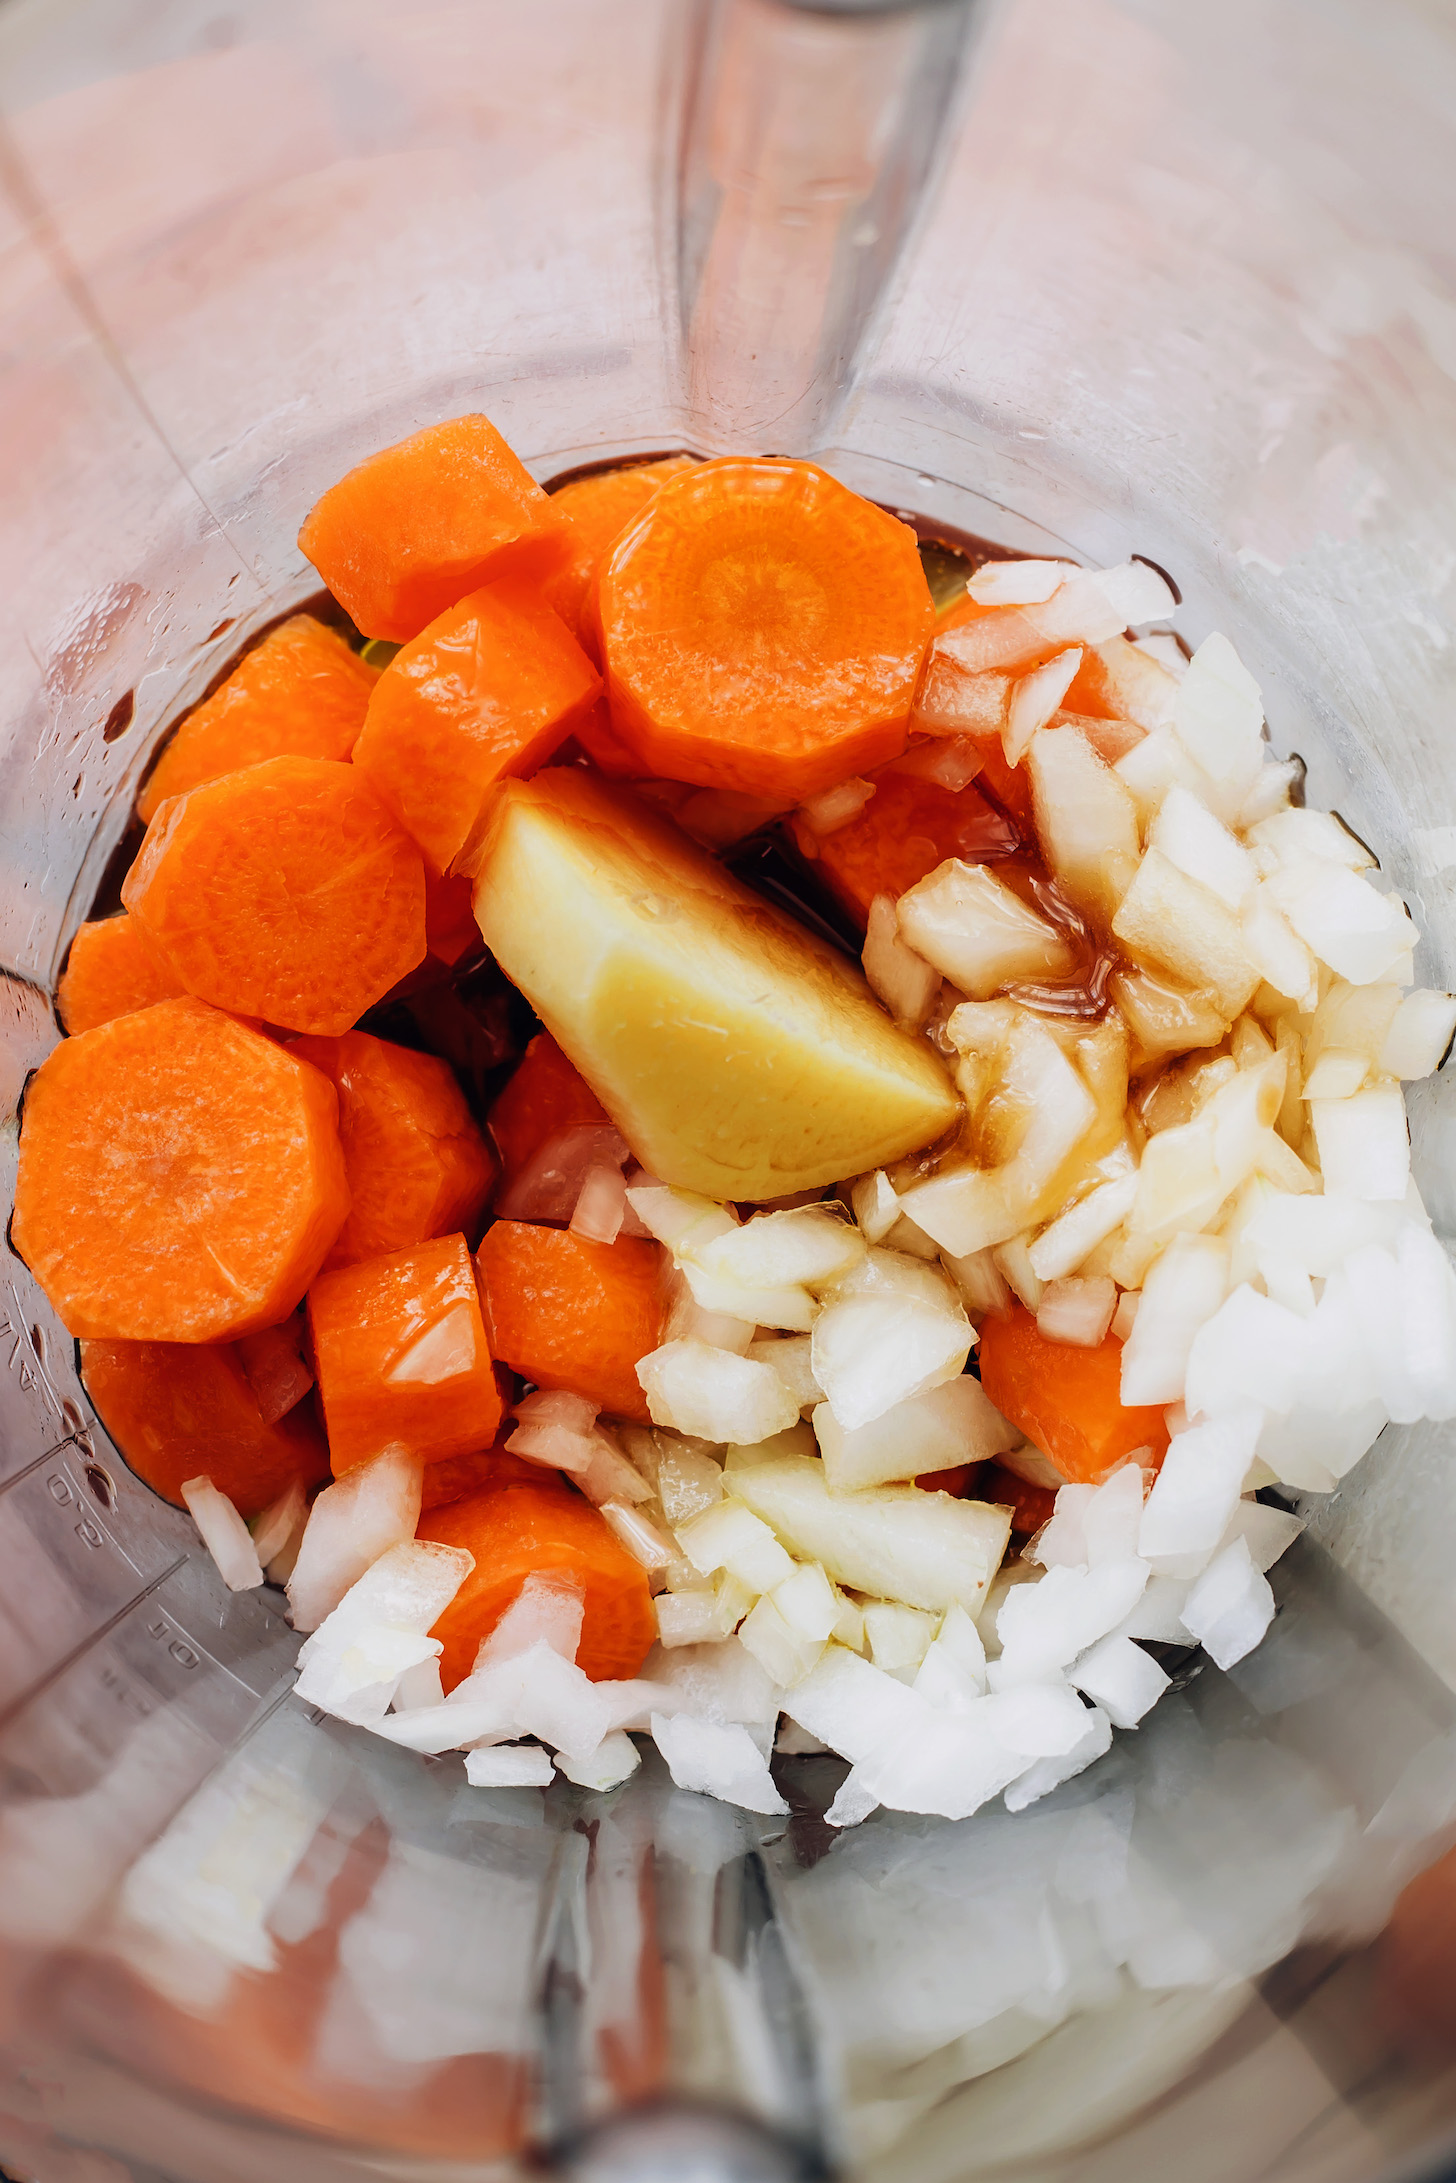 Mélangeur avec des ingrédients pour faire notre recette de vinaigrette aux carottes et au gingembre